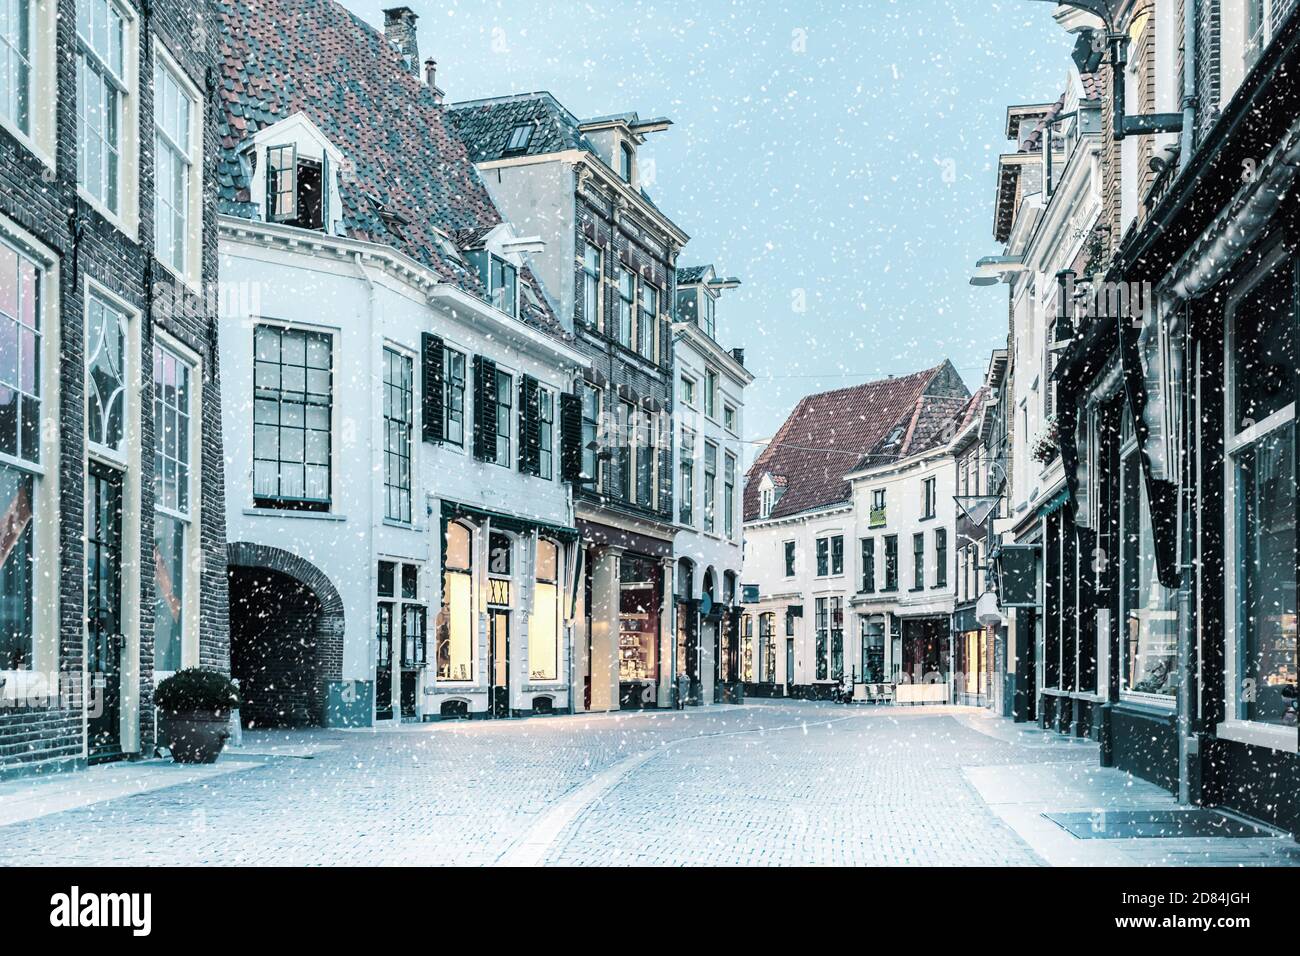 Rue commerçante avec chute de neige dans le centre-ville néerlandais de Zutphen, aux pays-Bas Banque D'Images